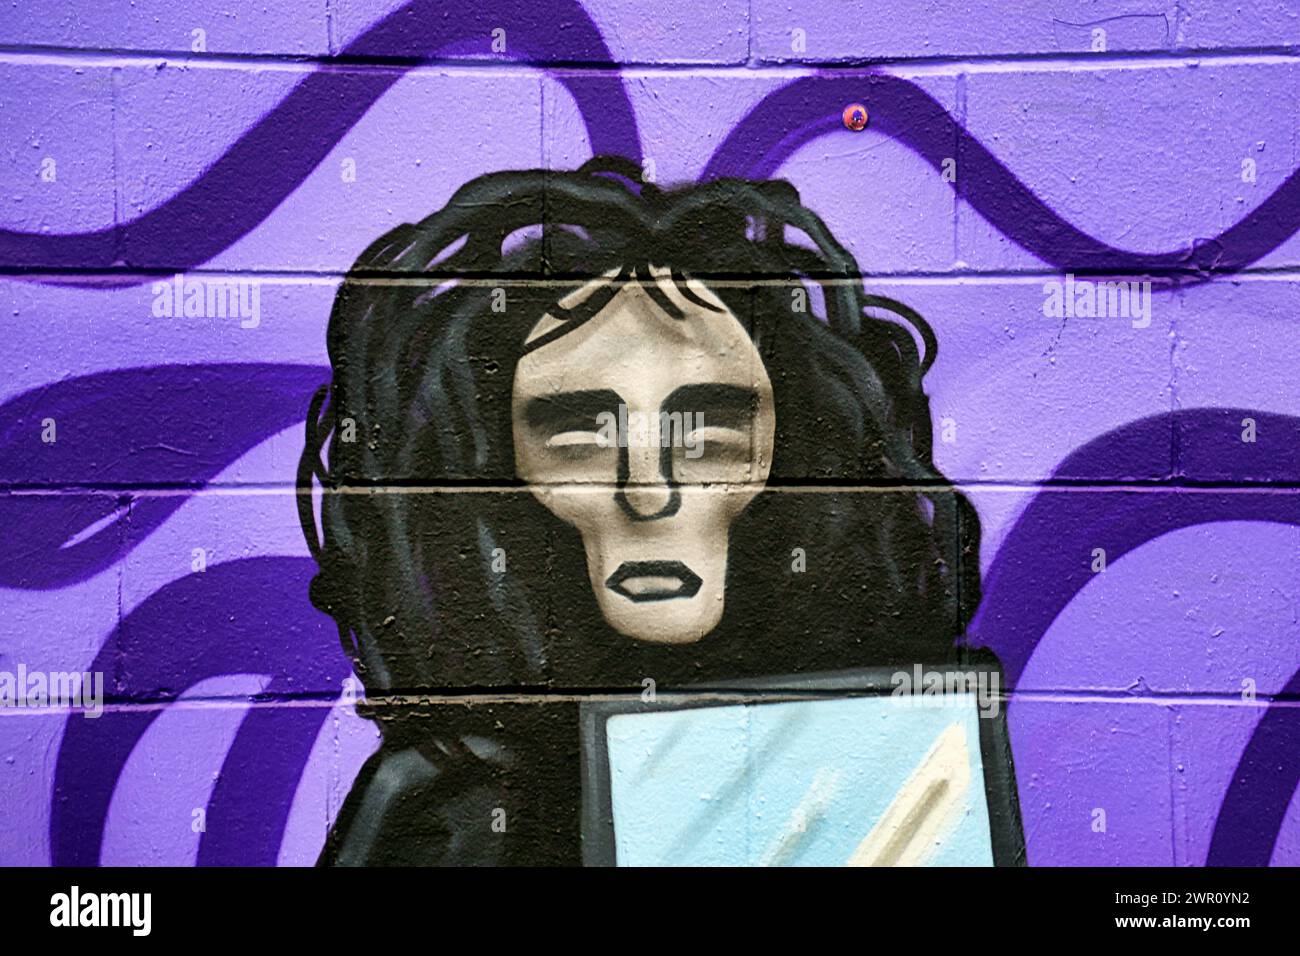 Glasgow, Écosse, Royaume-Uni. 10 mars 2024 : « The Unknown » des fans de Willy’s Chocolate Experience sont descendus à l’œuvre d’art sur les rives de la rivière clyde. La fresque murale de la débâcle de Willy Wonka est apparue sur le mur de graffiti côté clyde sur la passerelle clyde. La peinture a été créée par l'artiste Ejek après que l'événement film Experience est devenu l'actualité nationale. L'œuvre représente les actrices qui ont travaillé à l'événement en tant qu'Oompa Loompa et 'The Unknown' du script d'intelligence artificielle. Crédit Gerard Ferry/Alamy Live News Banque D'Images